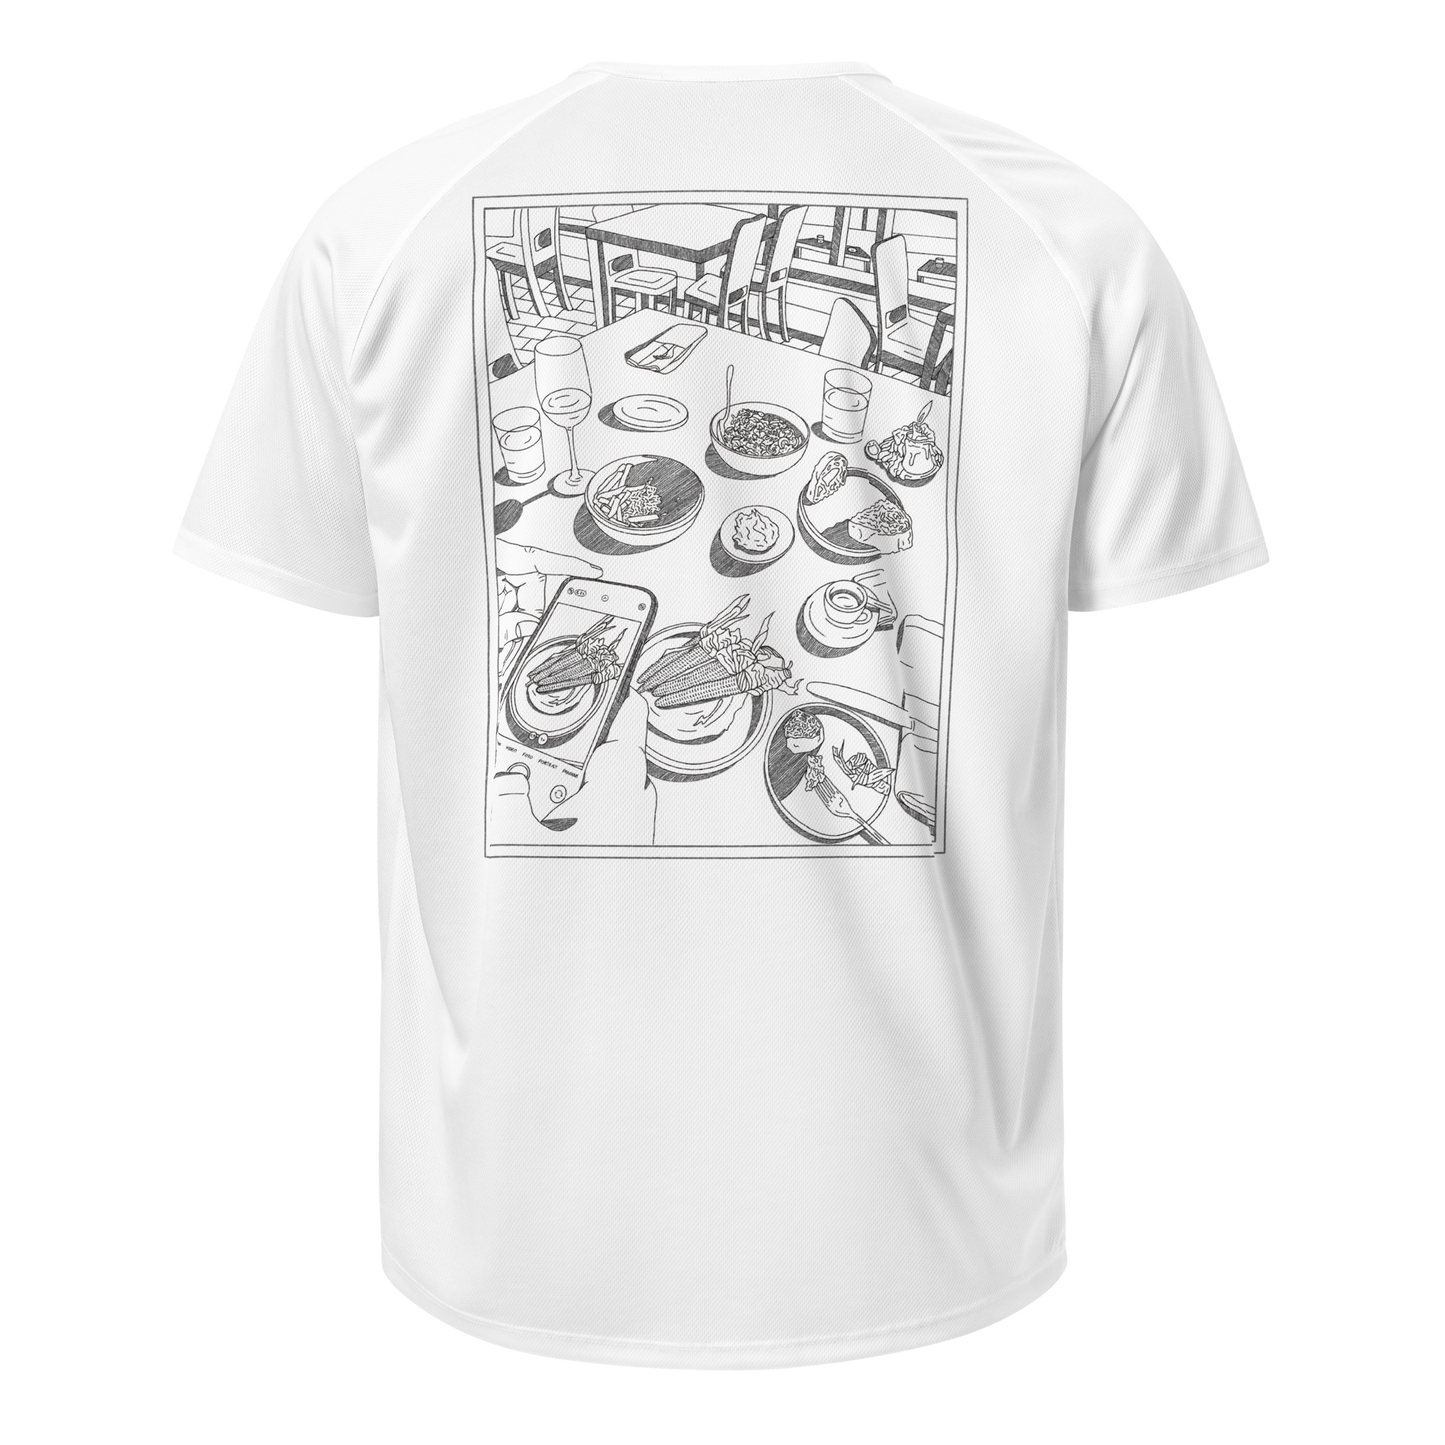 Sports t-shirt Unisex - Dinner White/black